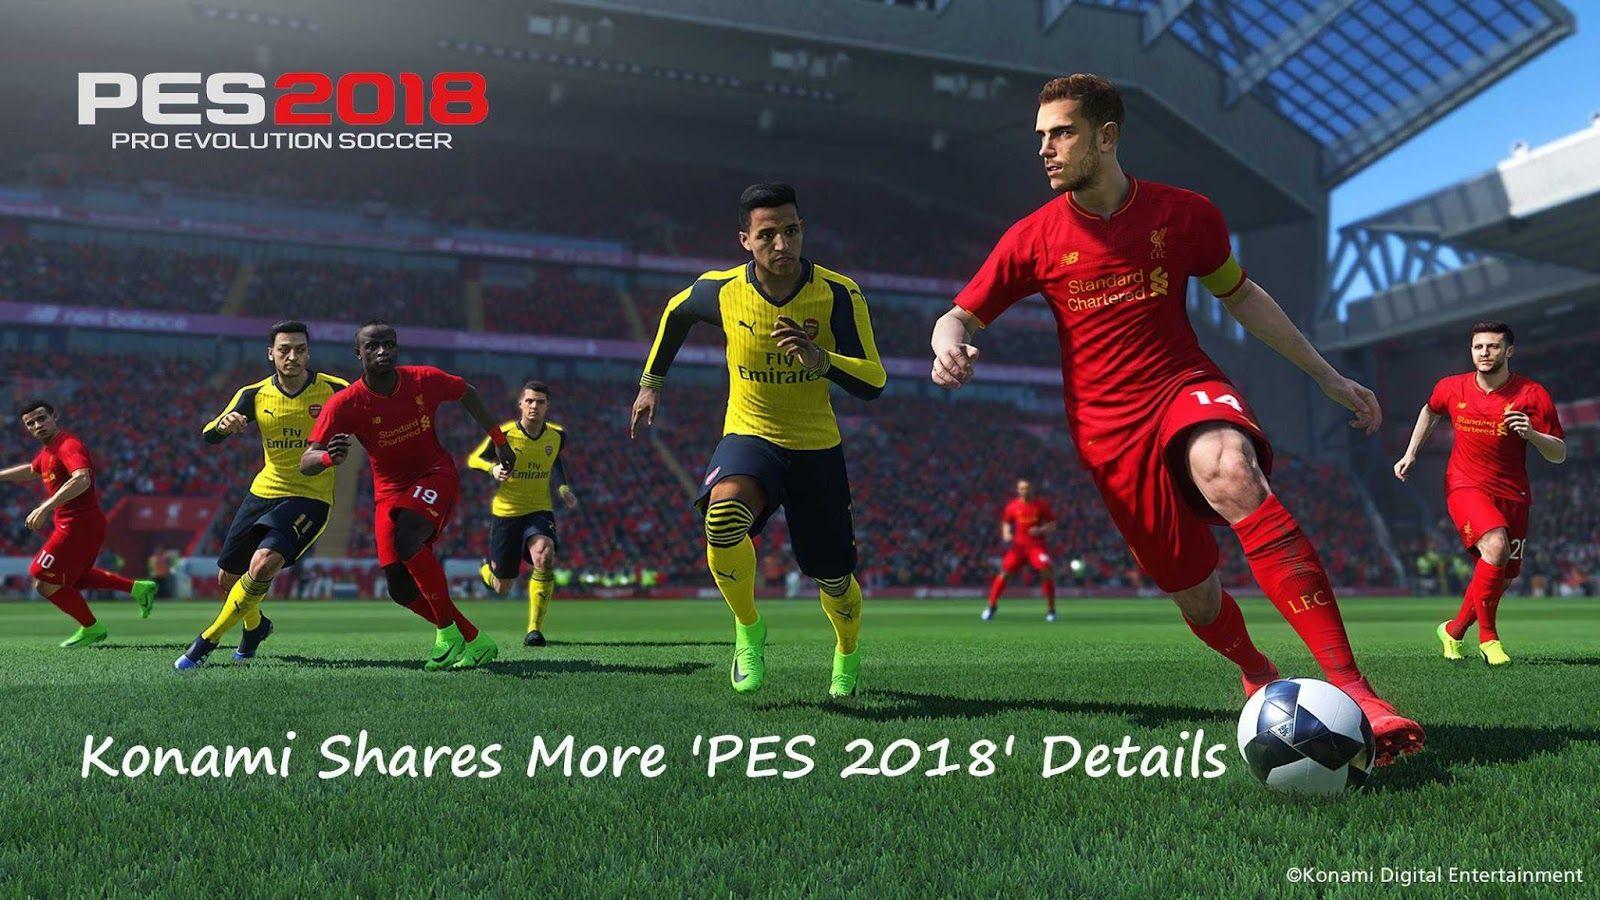 PES 2018 News: Konami Shares More 'PES 2018' Details